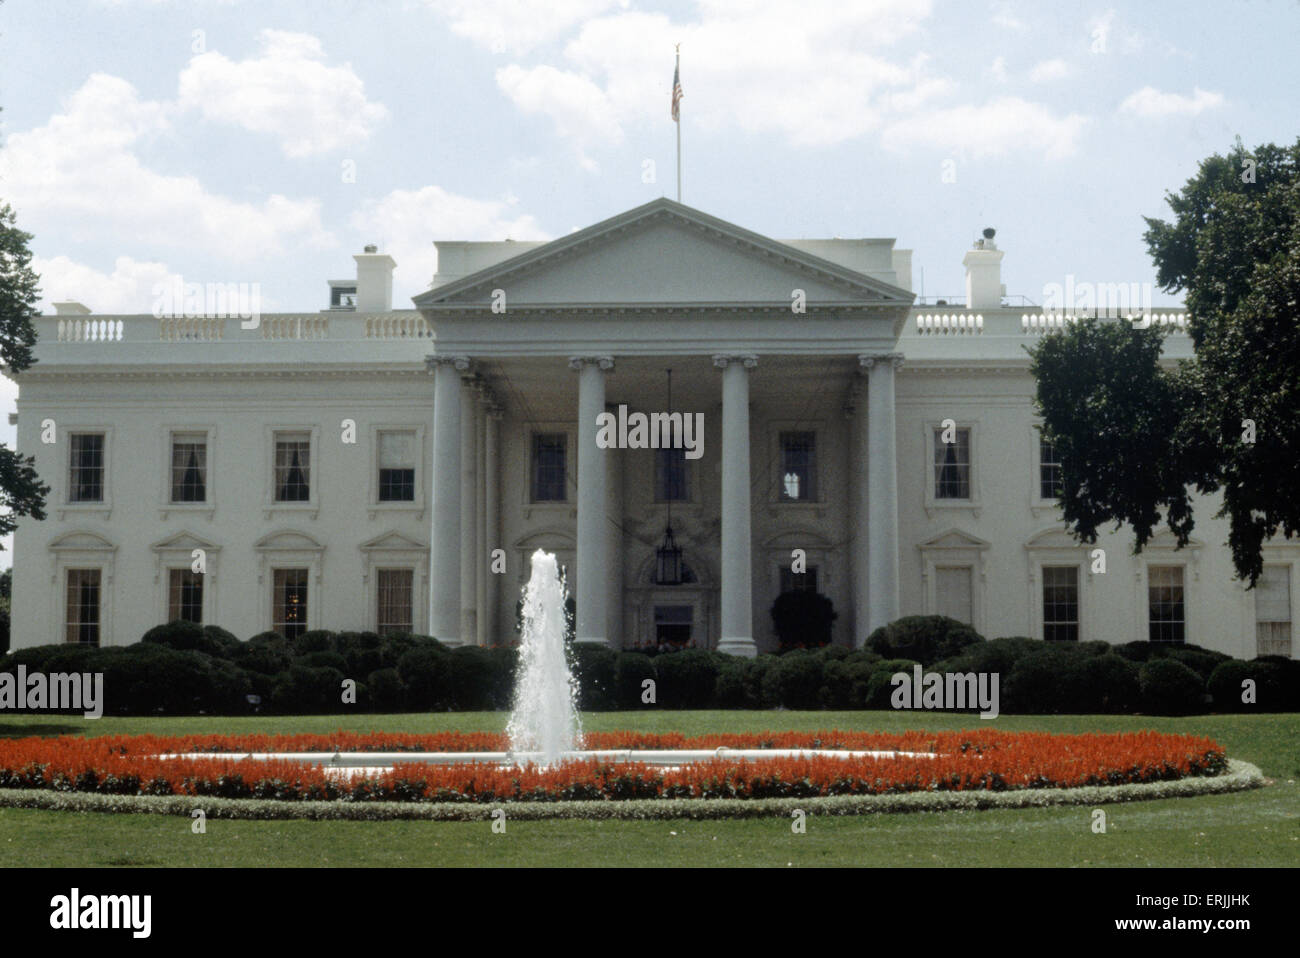 The White House at 1600 Pennsylvania Avenue Northwest, Washington, D.C. Circa 1980. Stock Photo